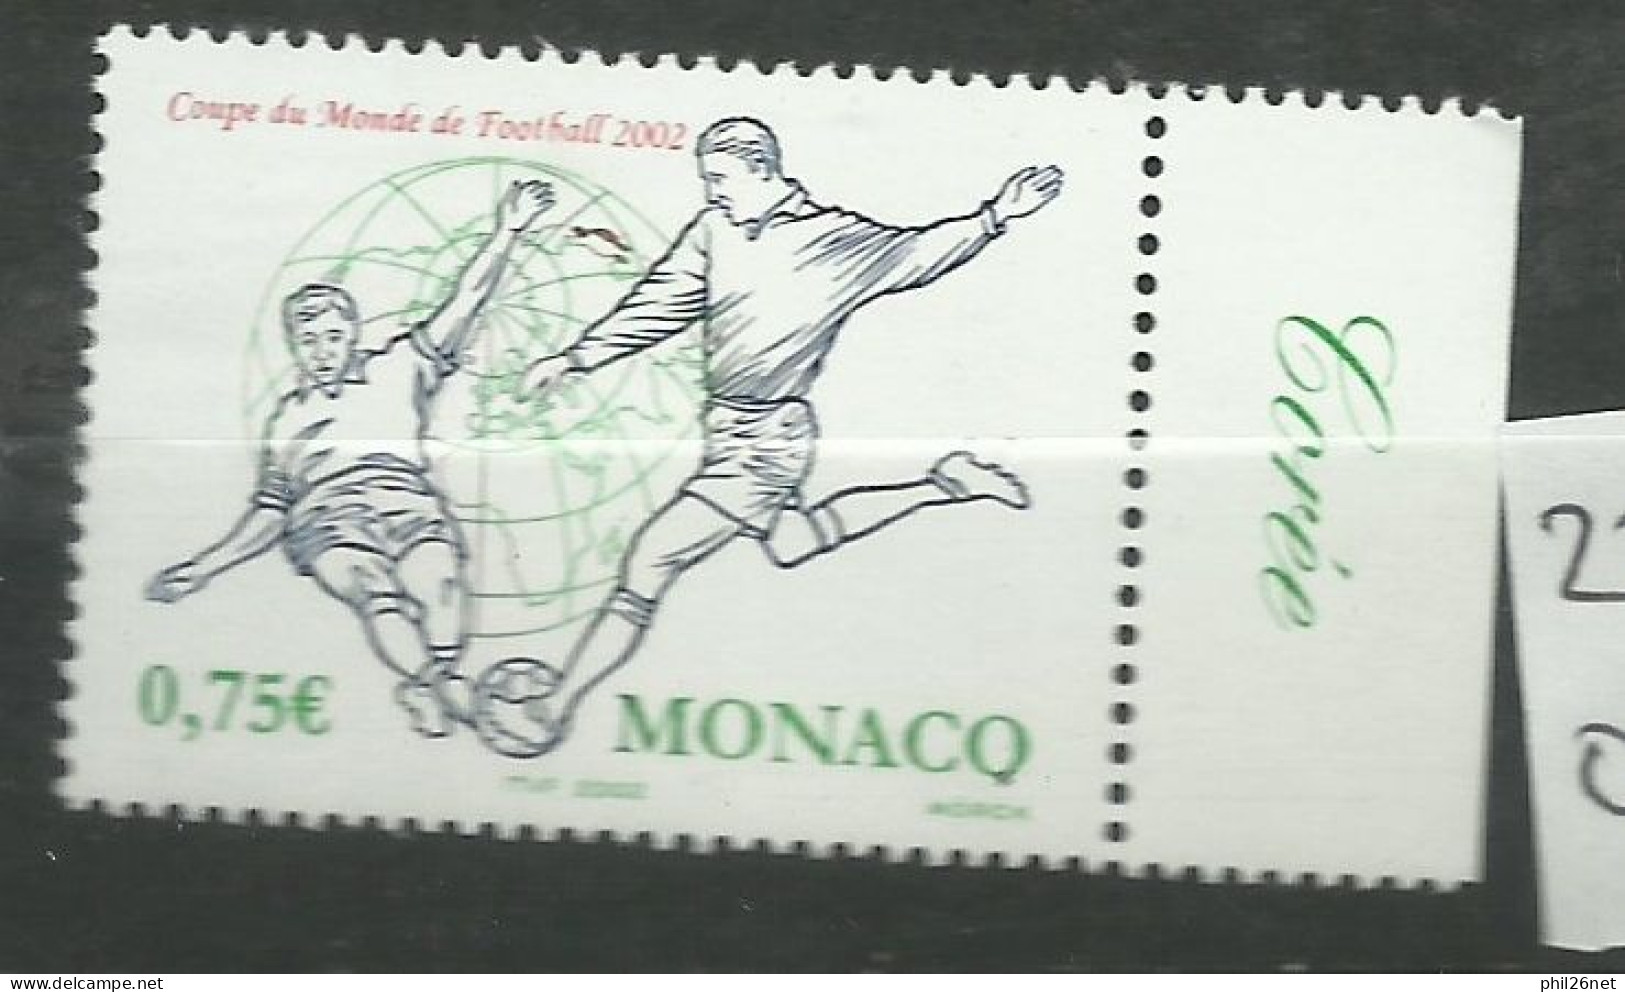 Monaco  N° 2350  Coupe Du Monde Football  2002 Corée Du Sud Et Japon   Neuf  *  *     B/TB   Voir Scans  Soldé ! ! ! - 2002 – South Korea / Japan